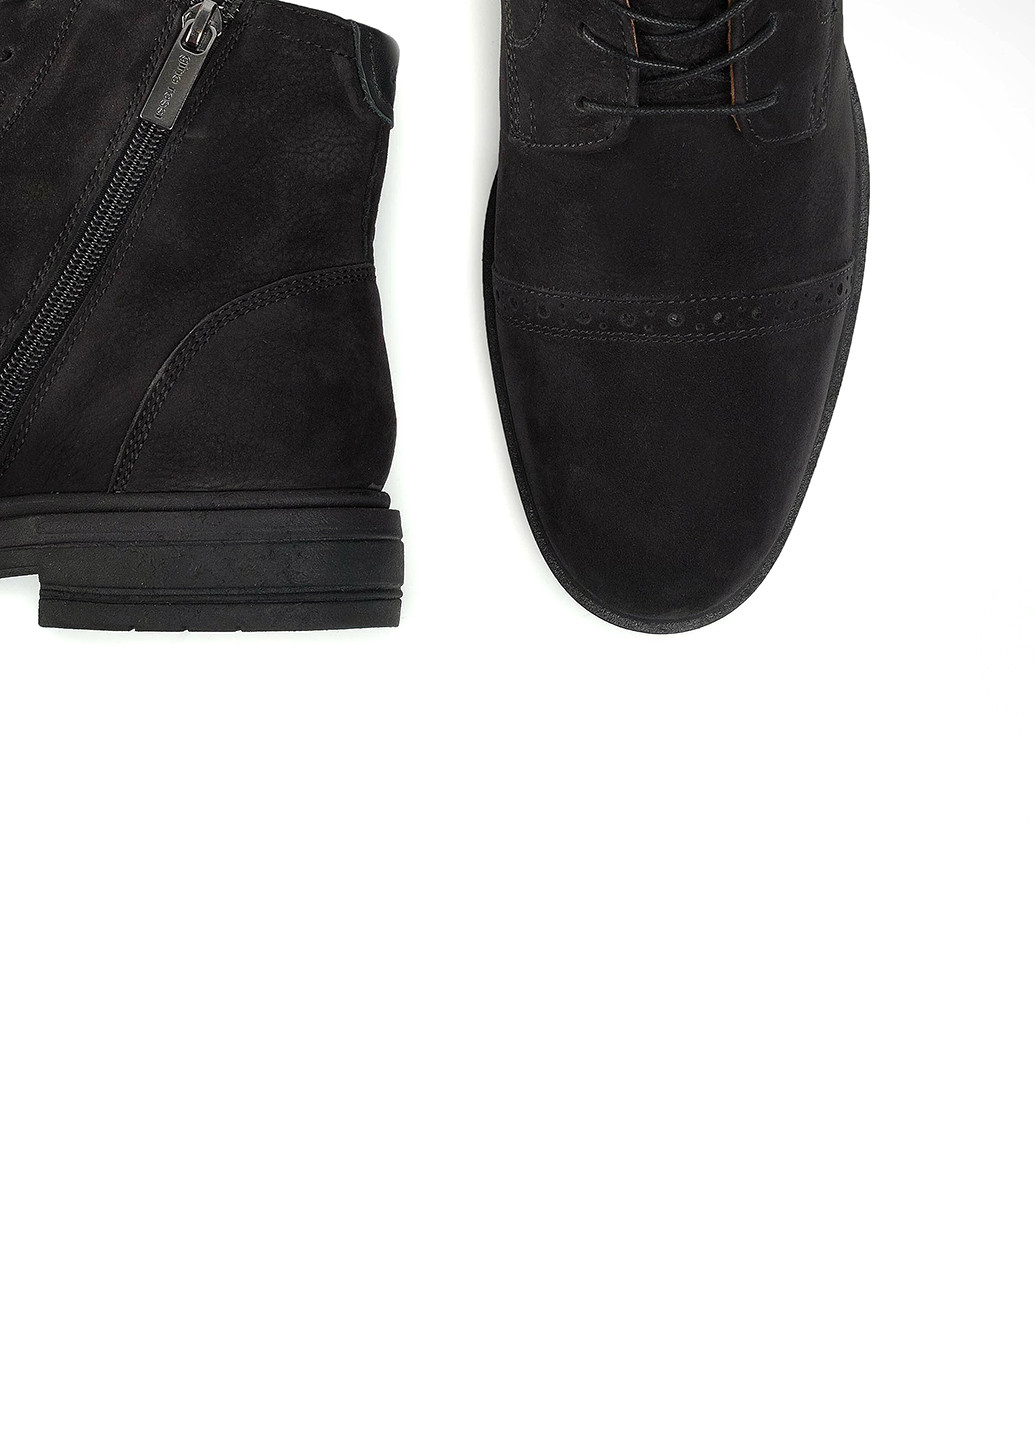 Черные осенние черевики gino rossi mi08-c535-537-12 Gino Rossi